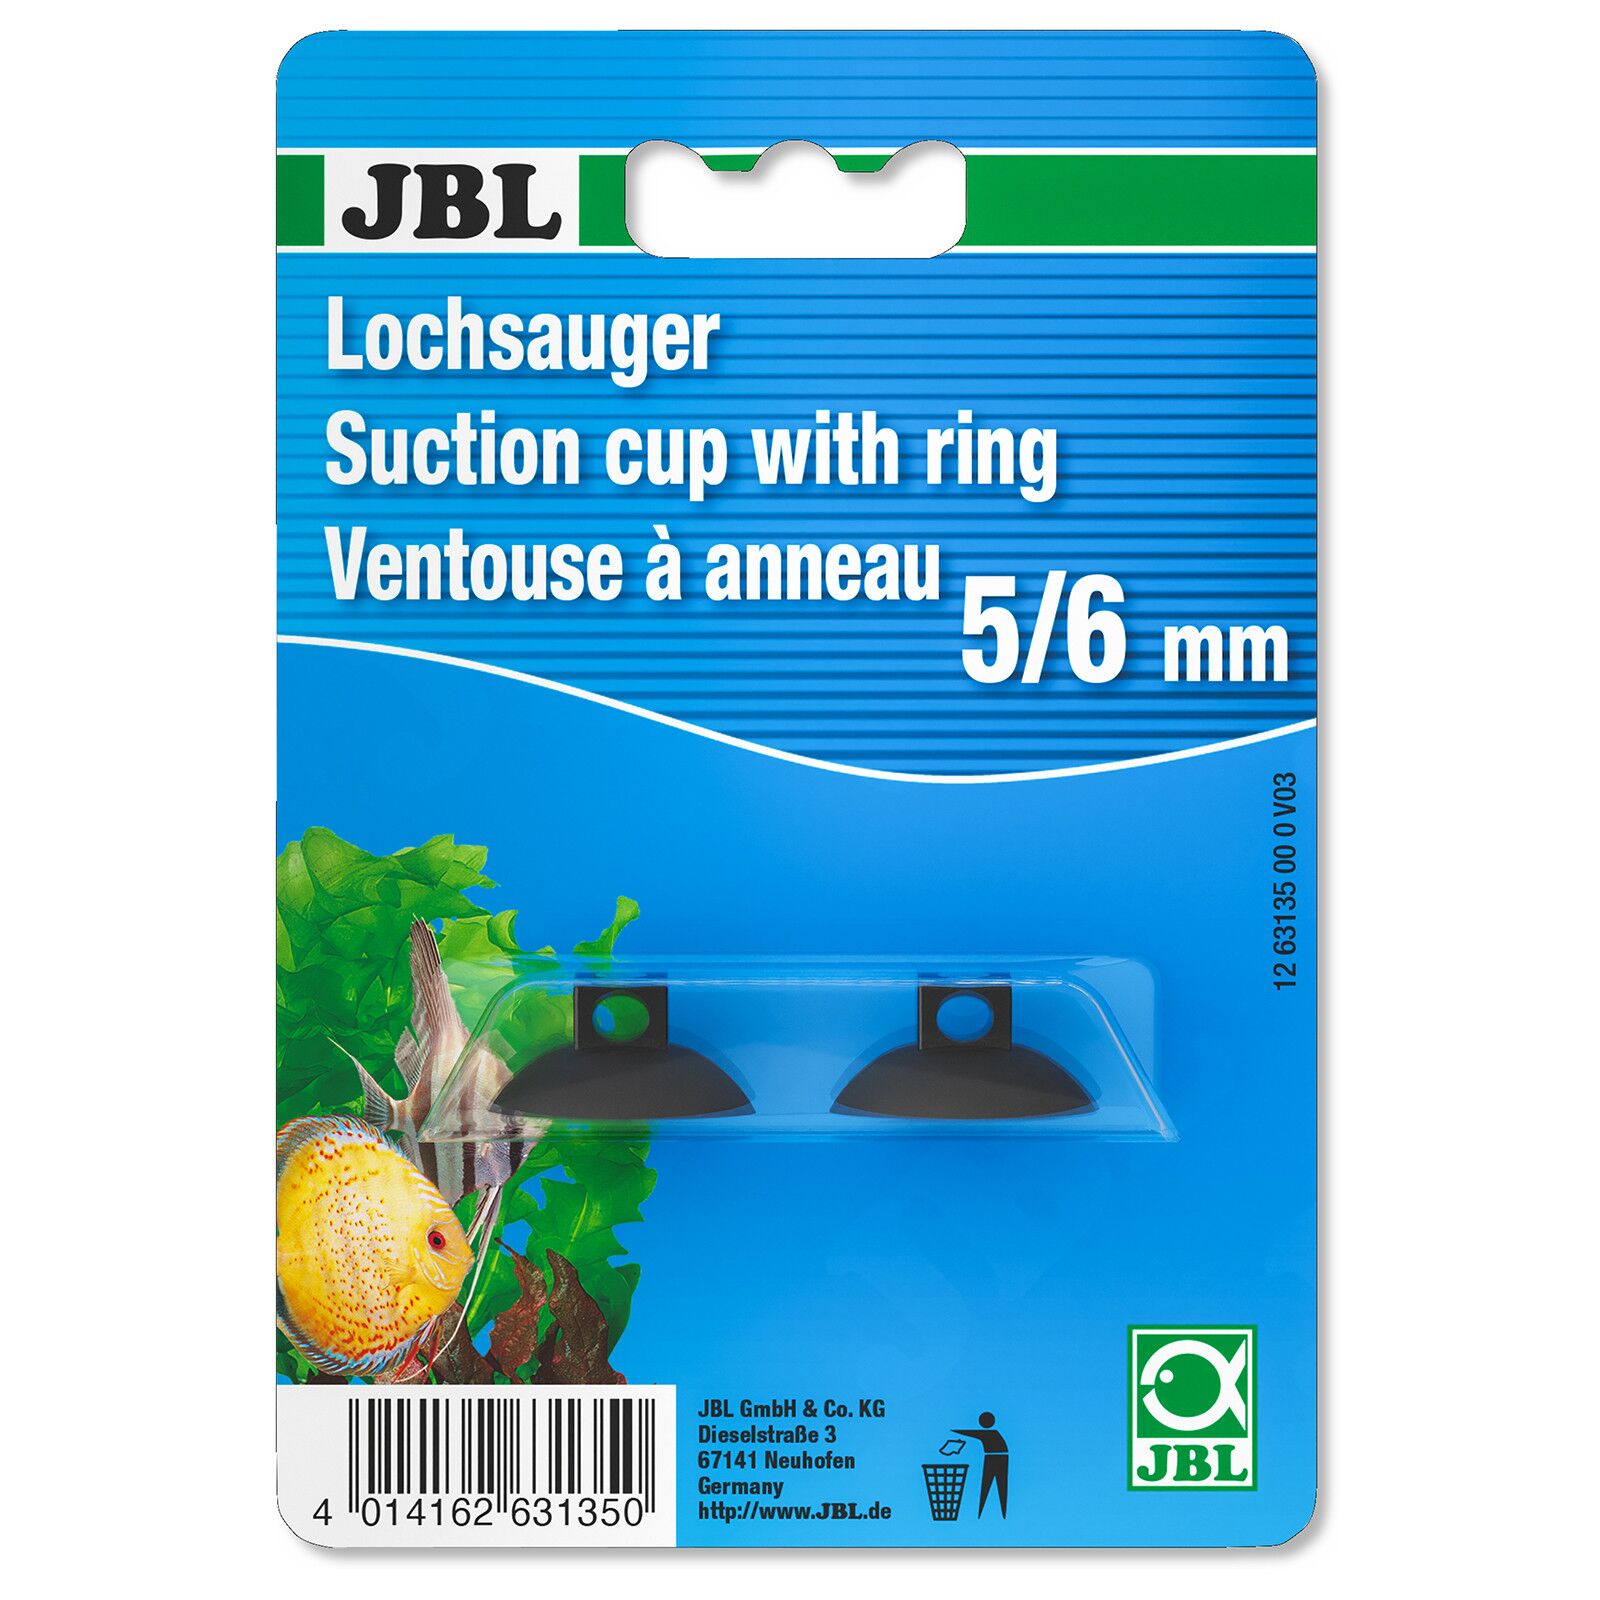 JBL - Lochsauger